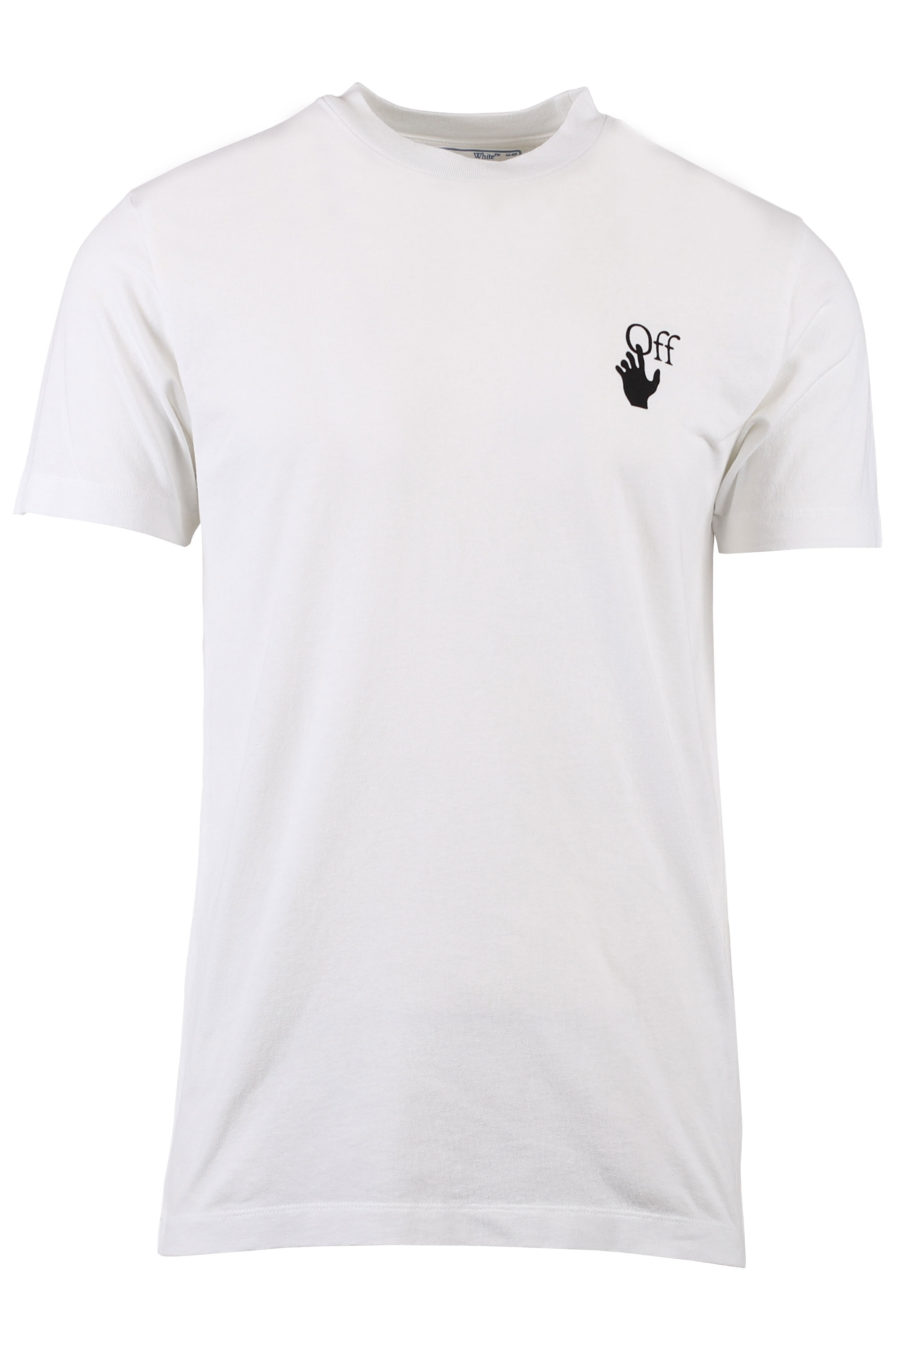 Weißes T-Shirt mit schwarzen Pfeilen im Farbverlauf - IMG 1361 m